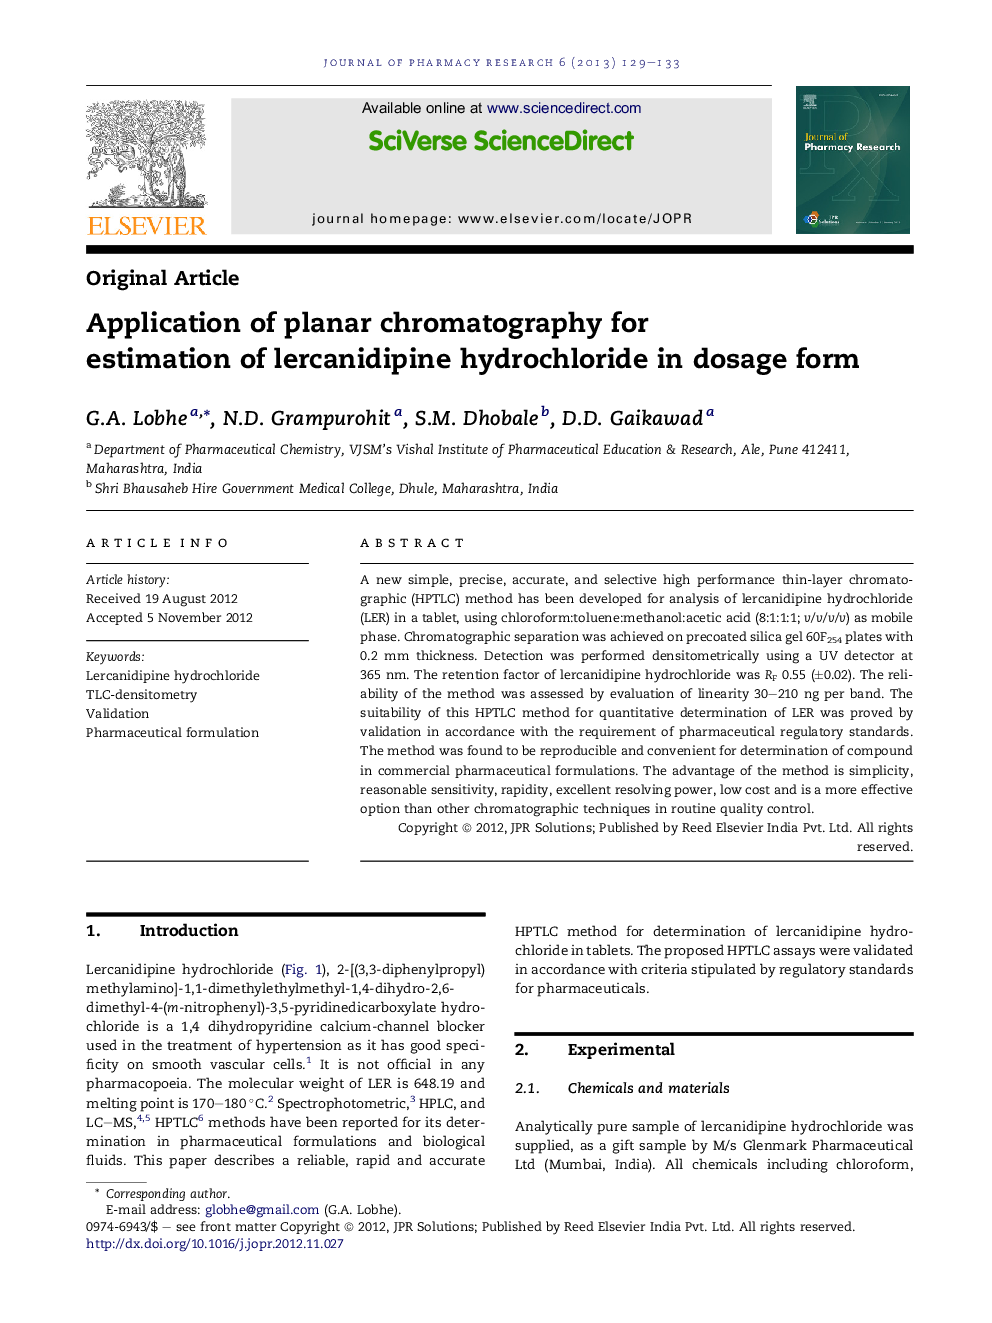 استفاده از کروماتوگرافی مسطح برای تخمین هورمون کلرید لرکانیدیپین در فرم دوز 